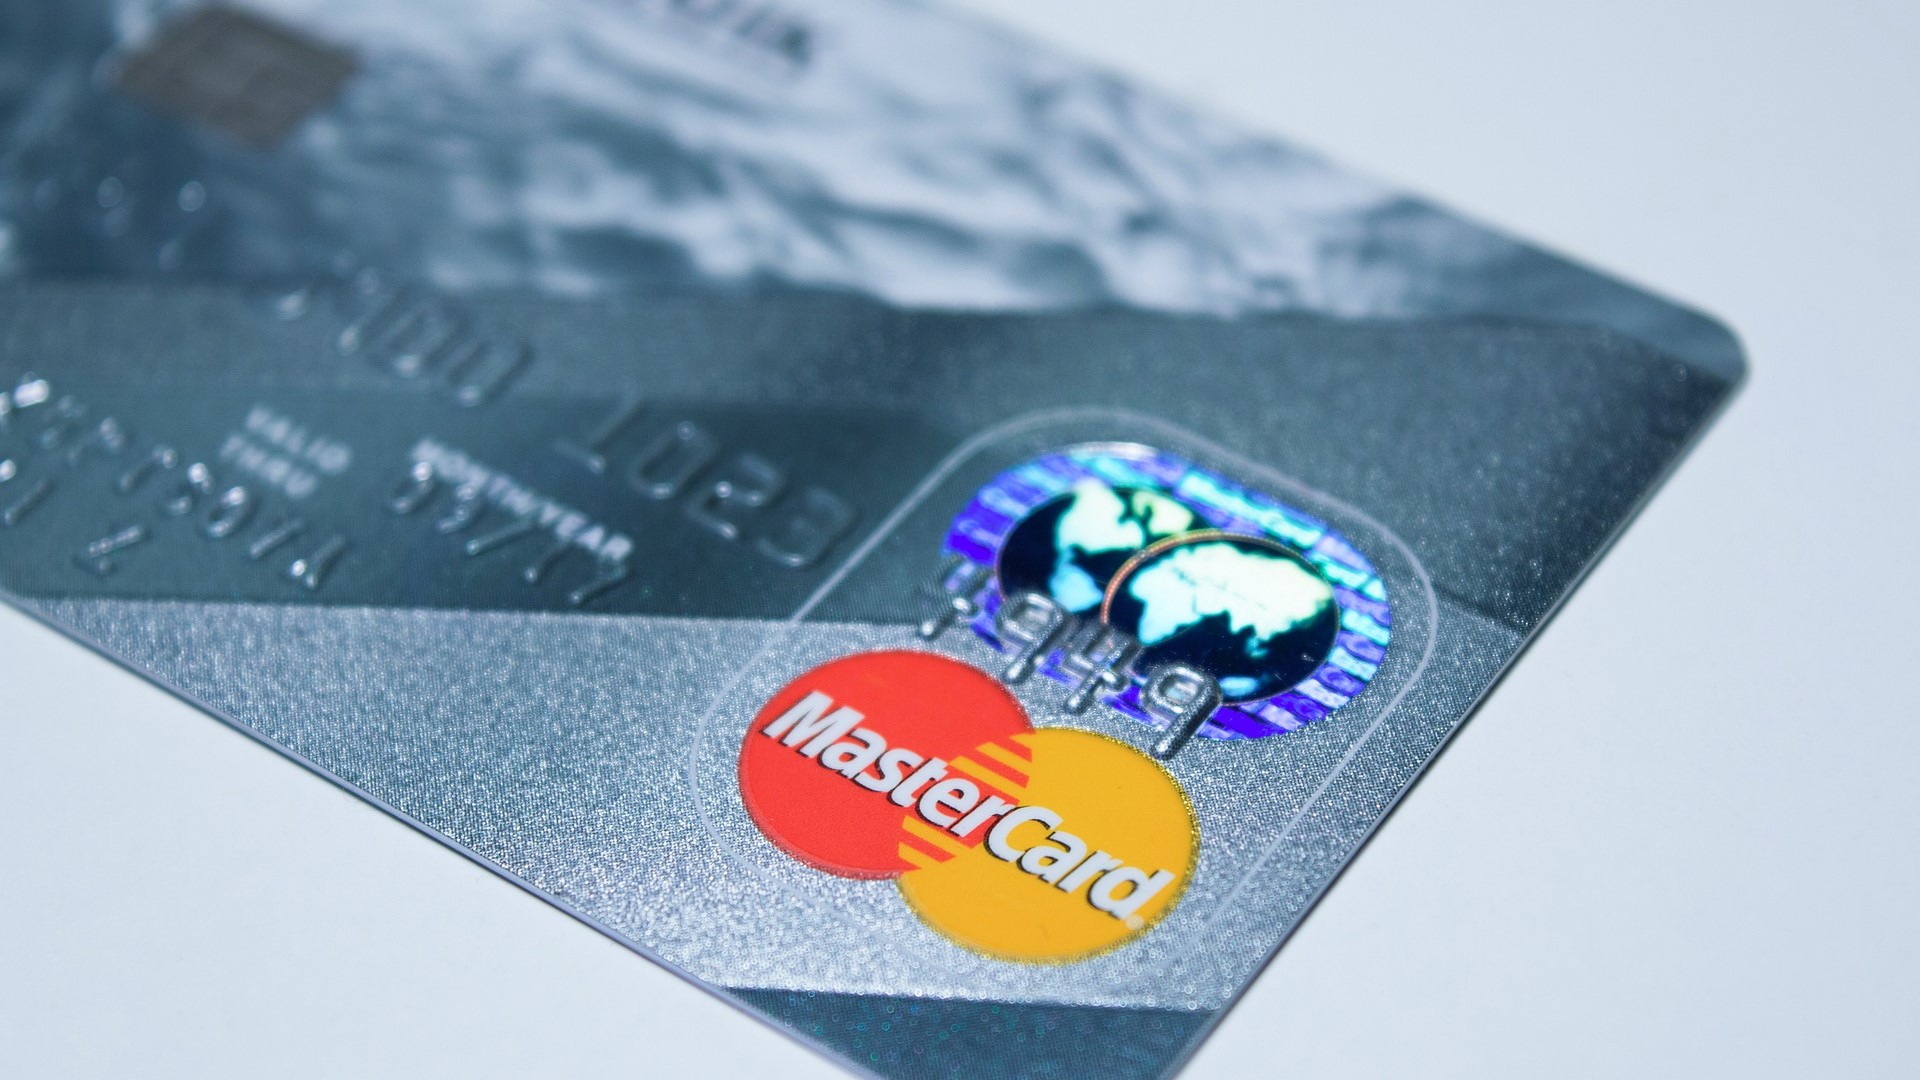 Mastercard เตรียมพร้อมรองรับการชำระเงินด้วยสกุลเงินดิจิทัลบนเครือข่ายในปีนี้